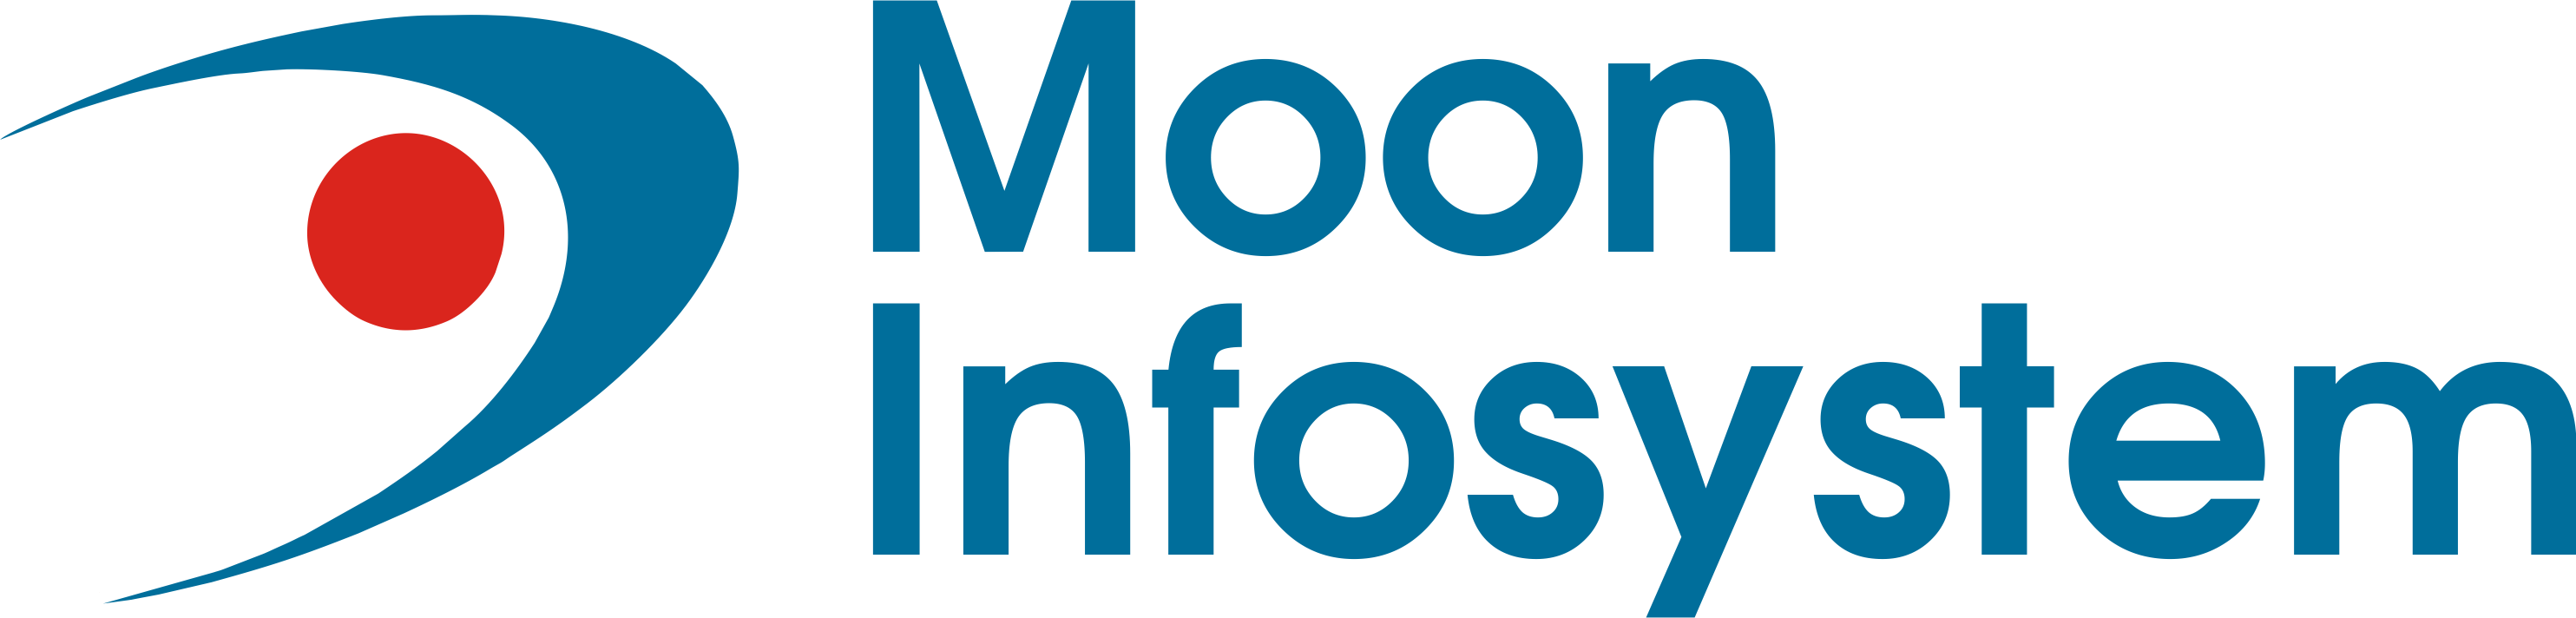 Moon infosystem